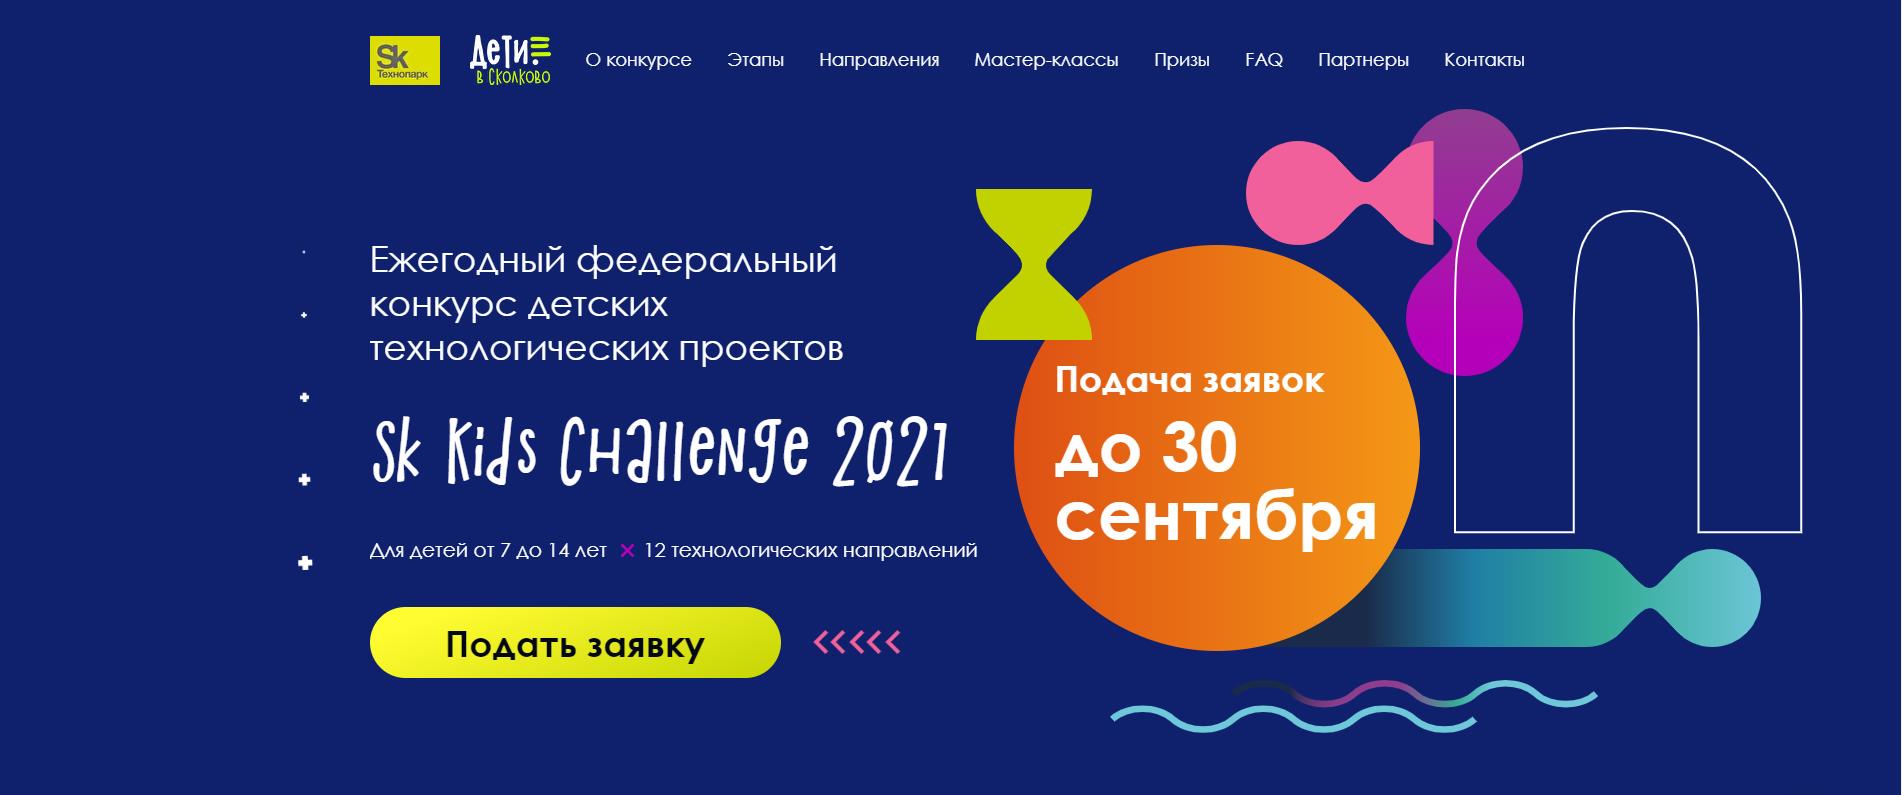 Ежегодный федеральный конкурс детских технологических проектов Sk Kids Challenge 2021